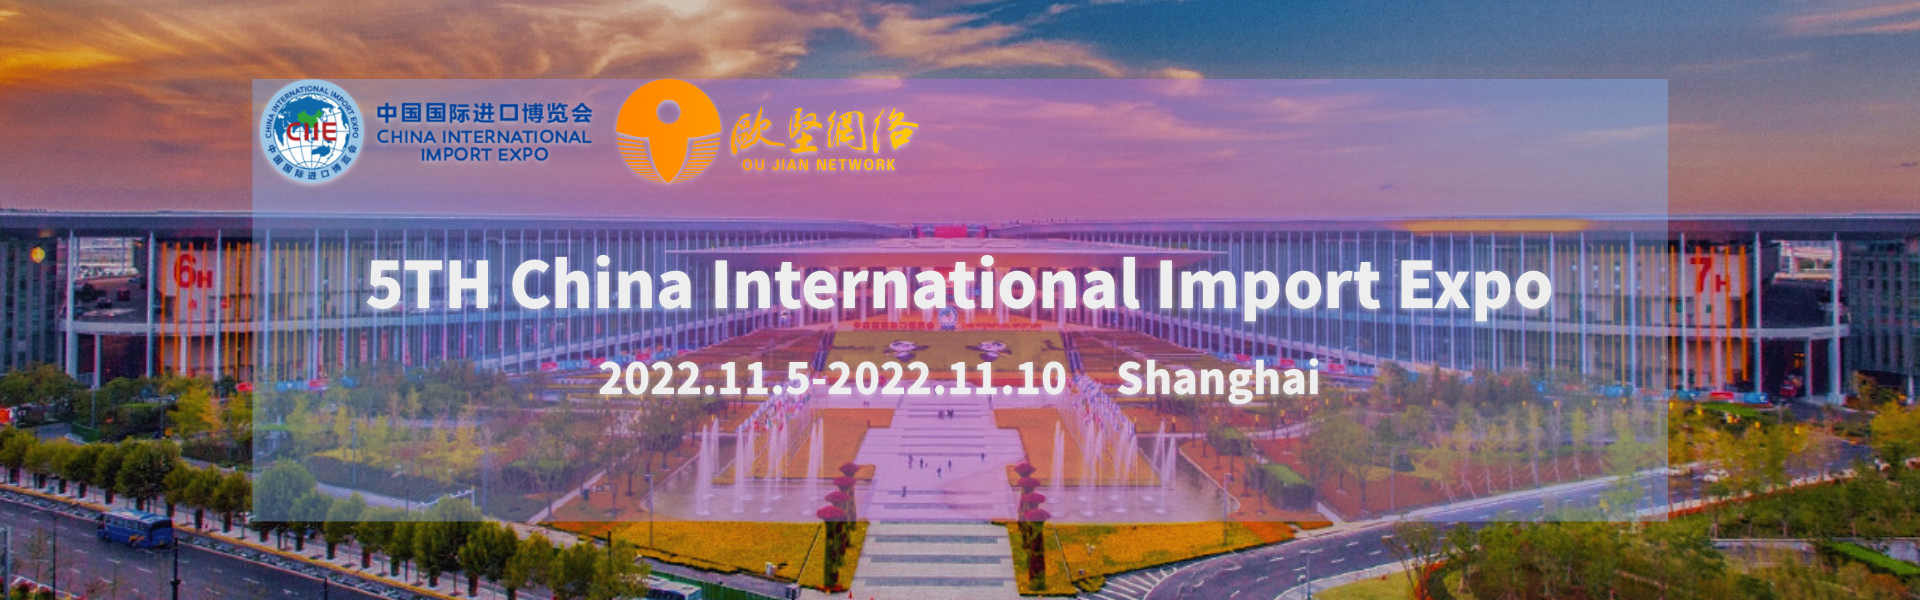 Expo internazionale di importazione cinese